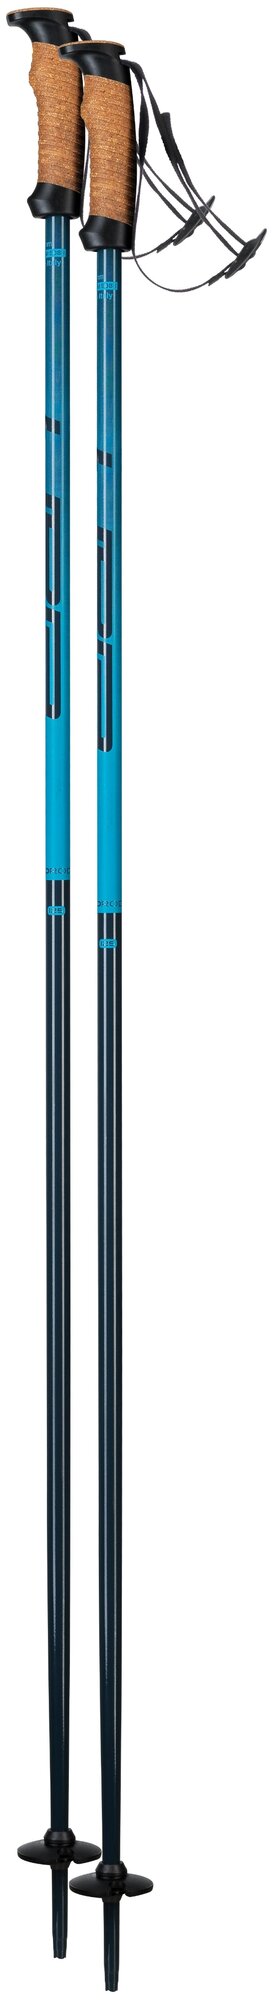 Горнолыжные палки ELAN Speedrod W Blue (см:115)